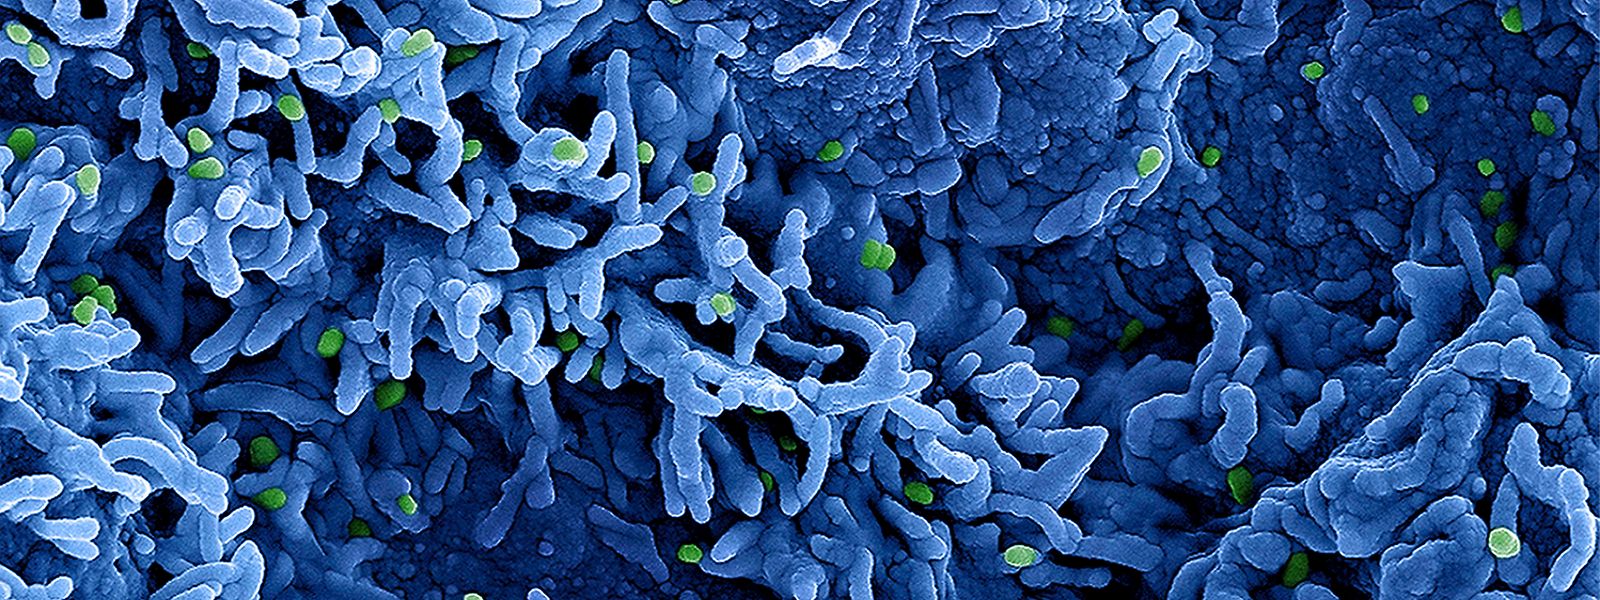 Eine kolorierte rasterelektronenmikroskopische Aufnahme des nun in Mpox umbenannten Affenpockenvirus.